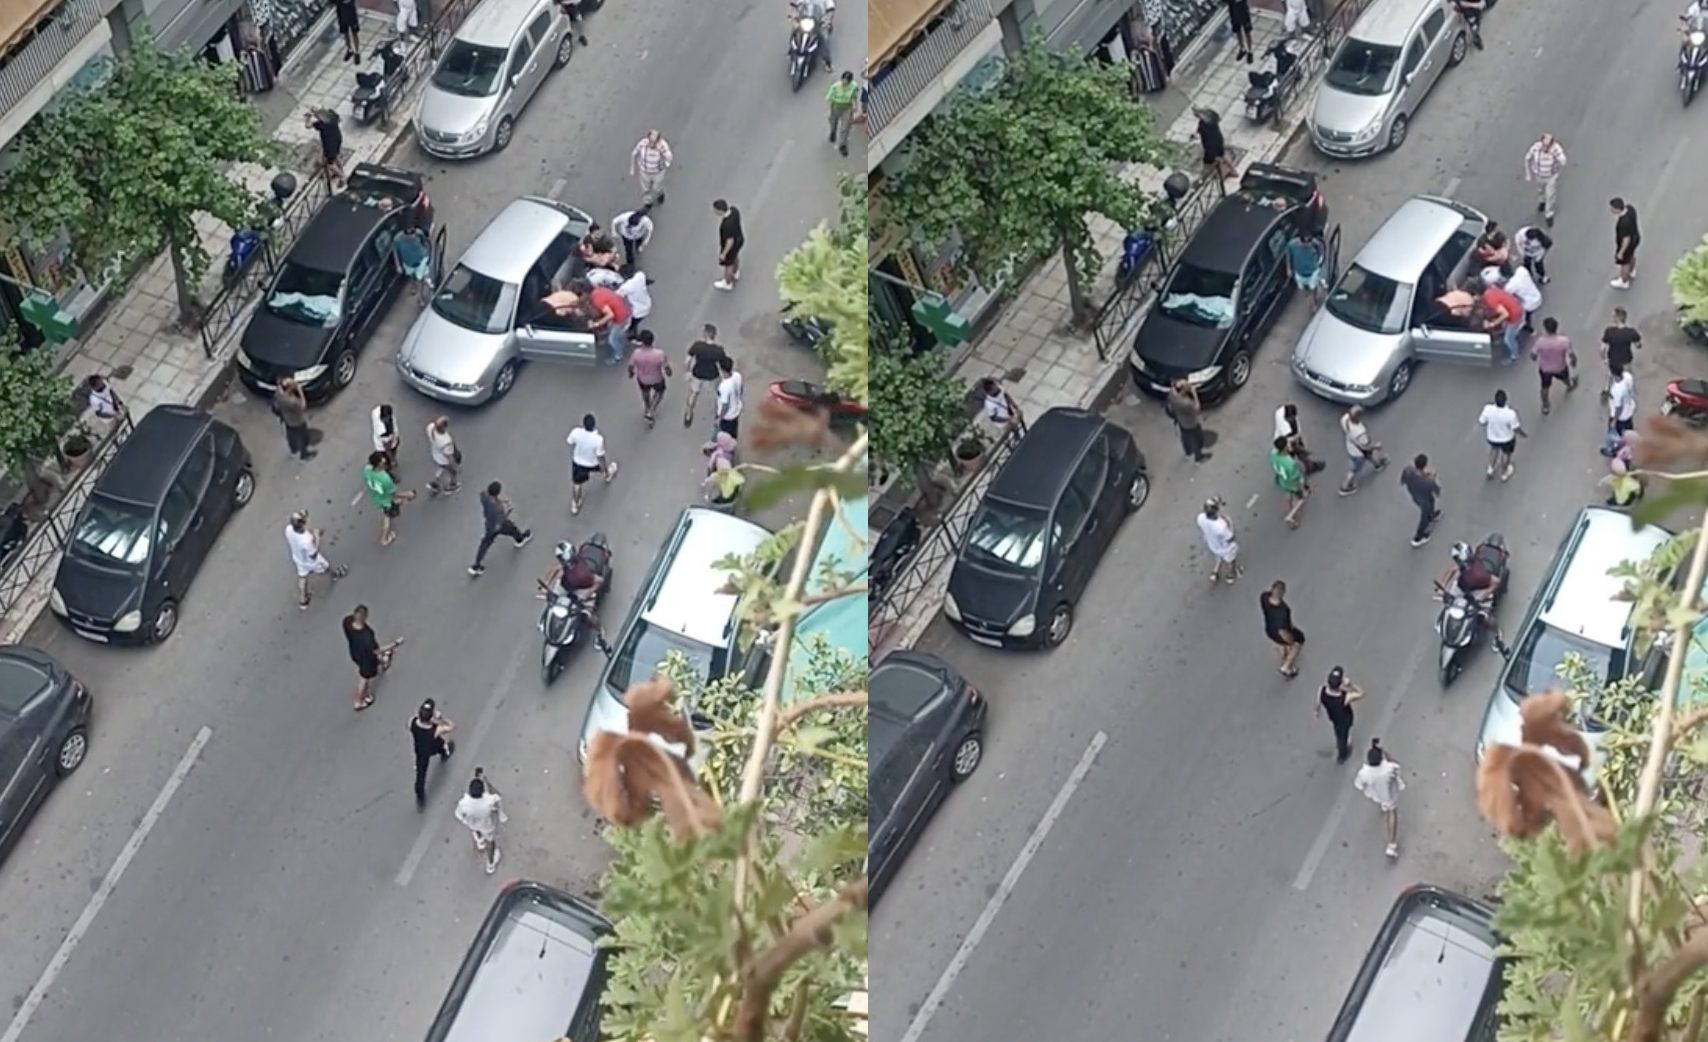 Βίντεο από τροχαίο στην πλατεία Βικτώριας - Οδηγός σε σοκ ουρλιάζει αφού τραυμάτισε παιδάκι